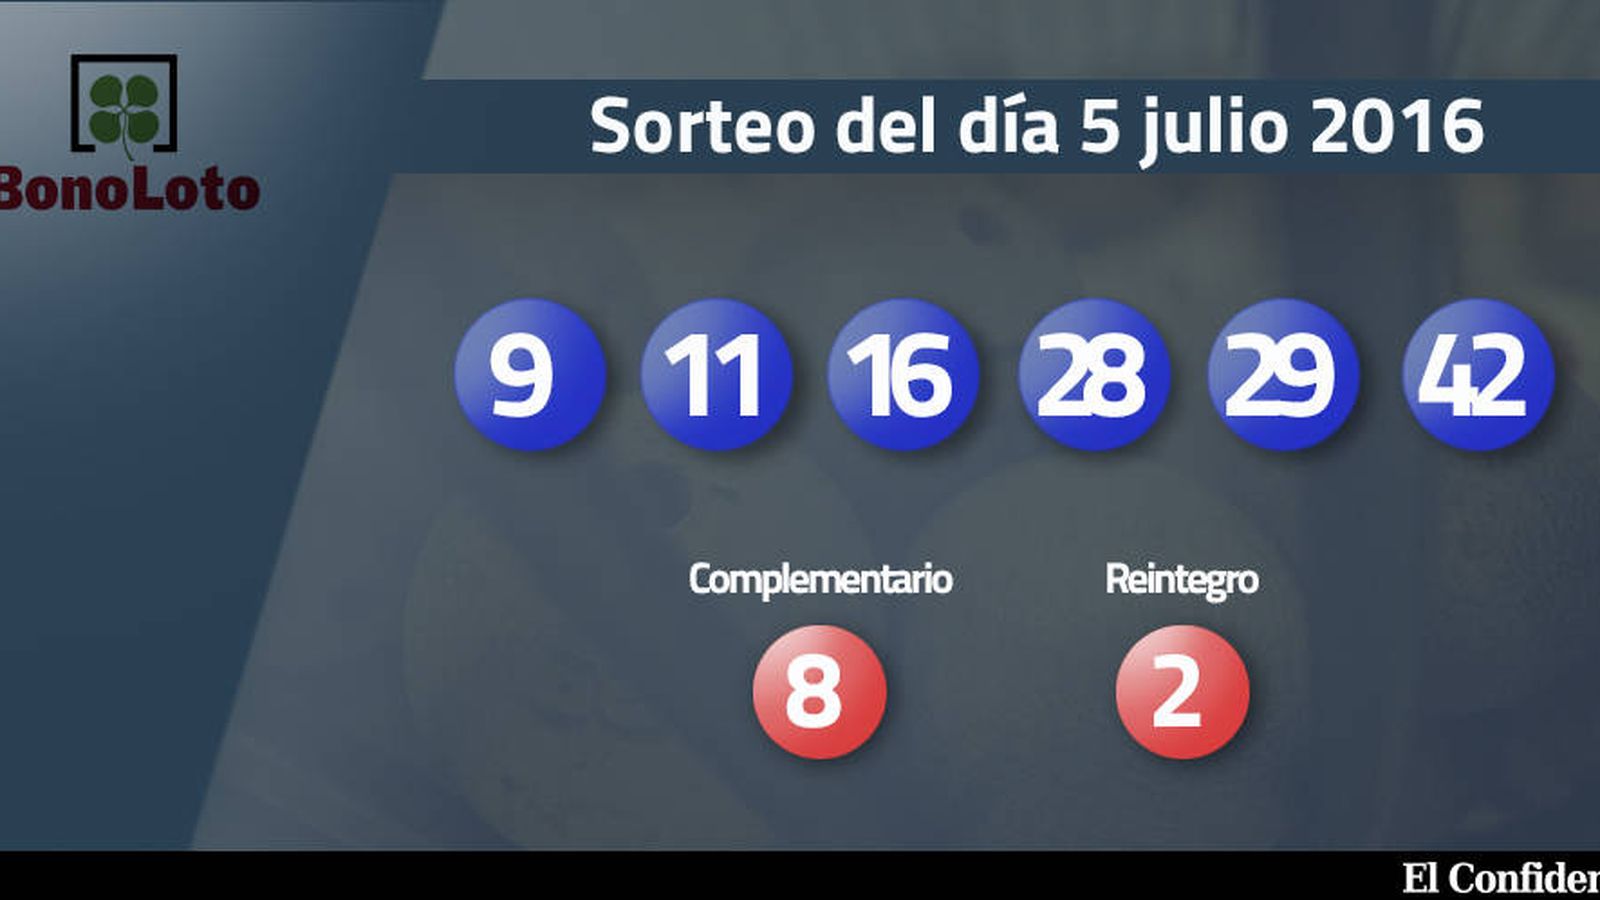 Foto: Resultados del sorteo de la Bonoloto del 5 julio 2016 (EC)